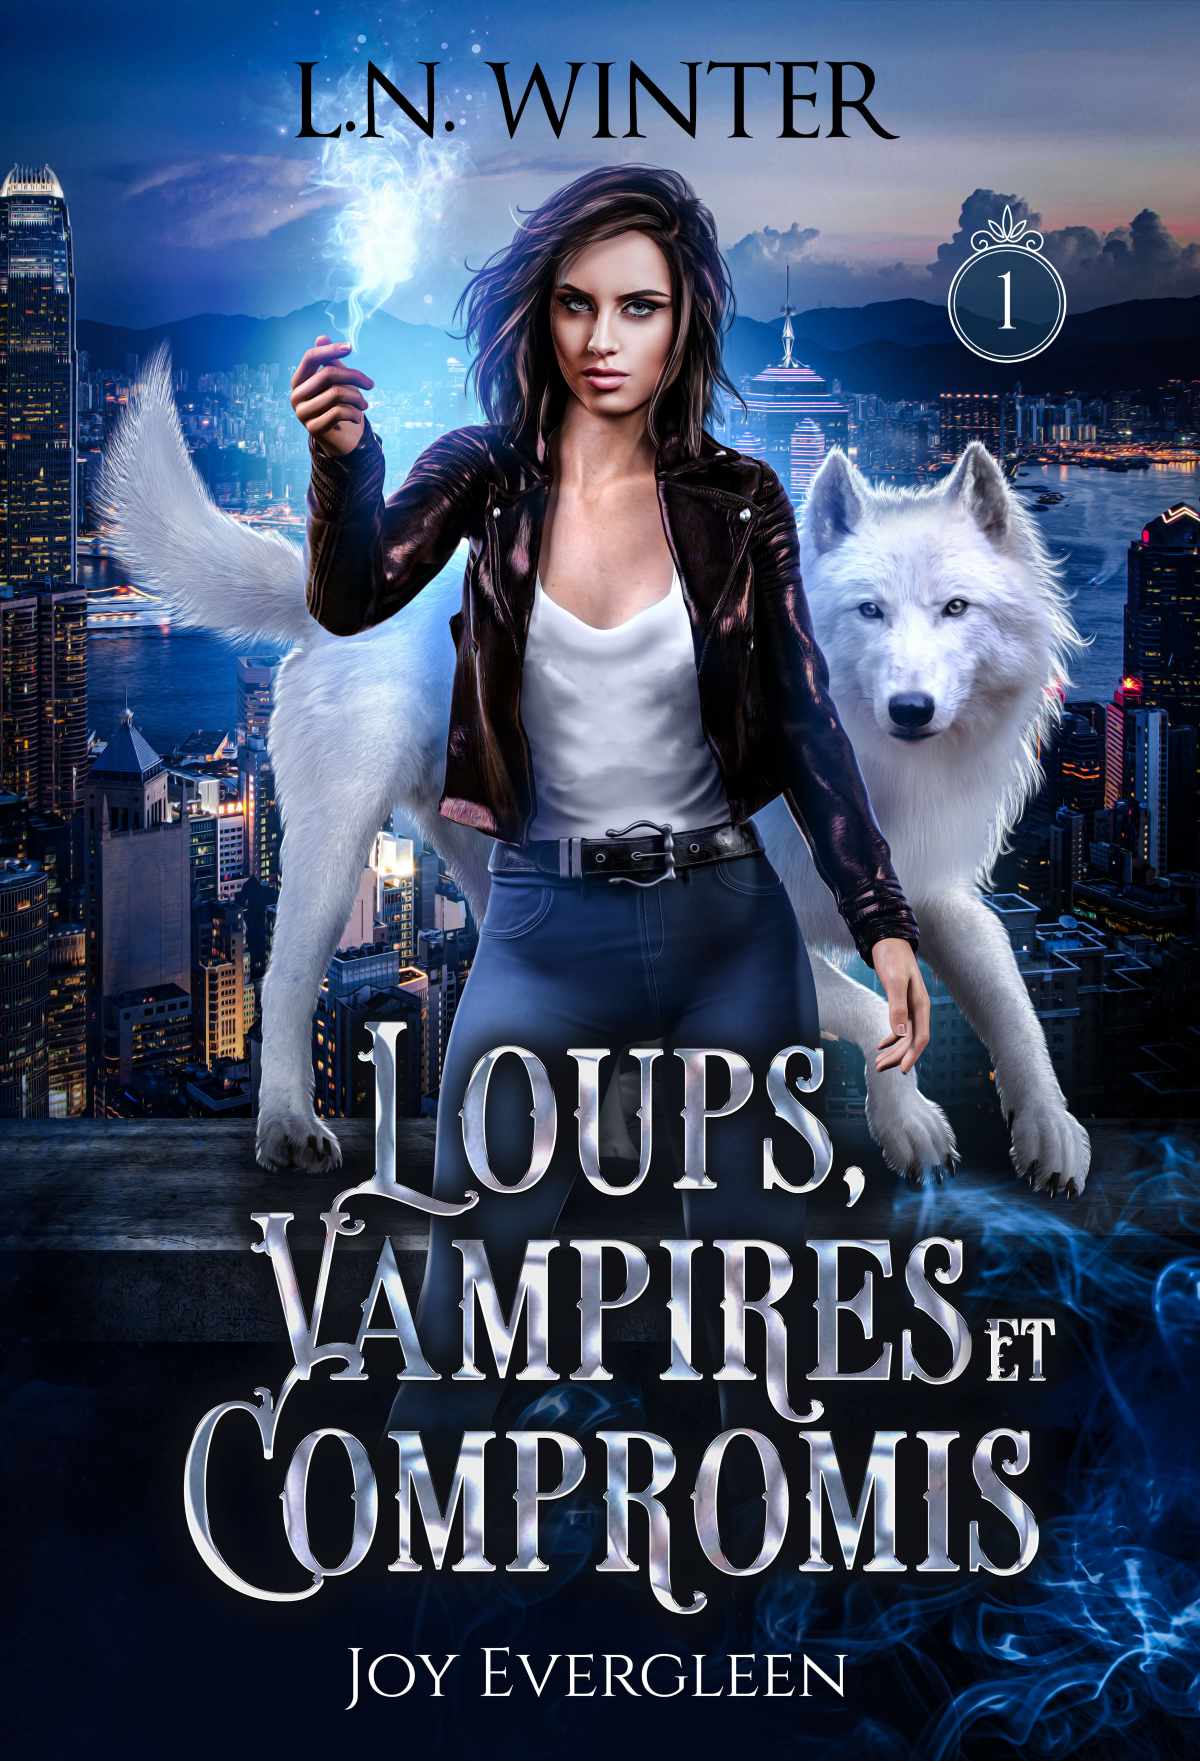 Loups, Vampires et compromis, Joy Evergleen de L.N. Winter